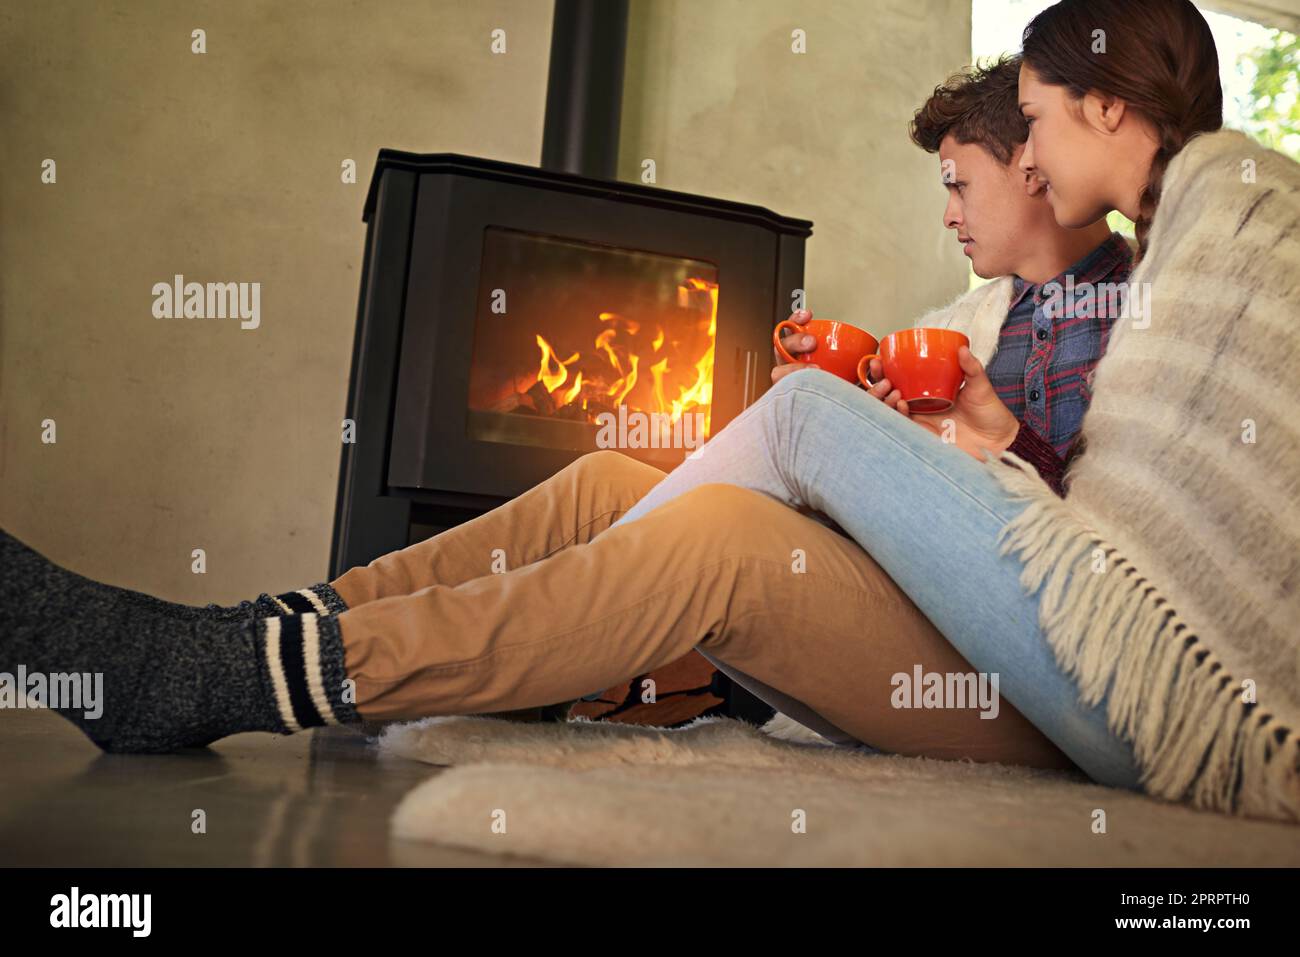 Bleiben Sie gemütlich in dieser Saison. Ein junges Paar trinkt heiße Schokolade am Kamin. Stockfoto